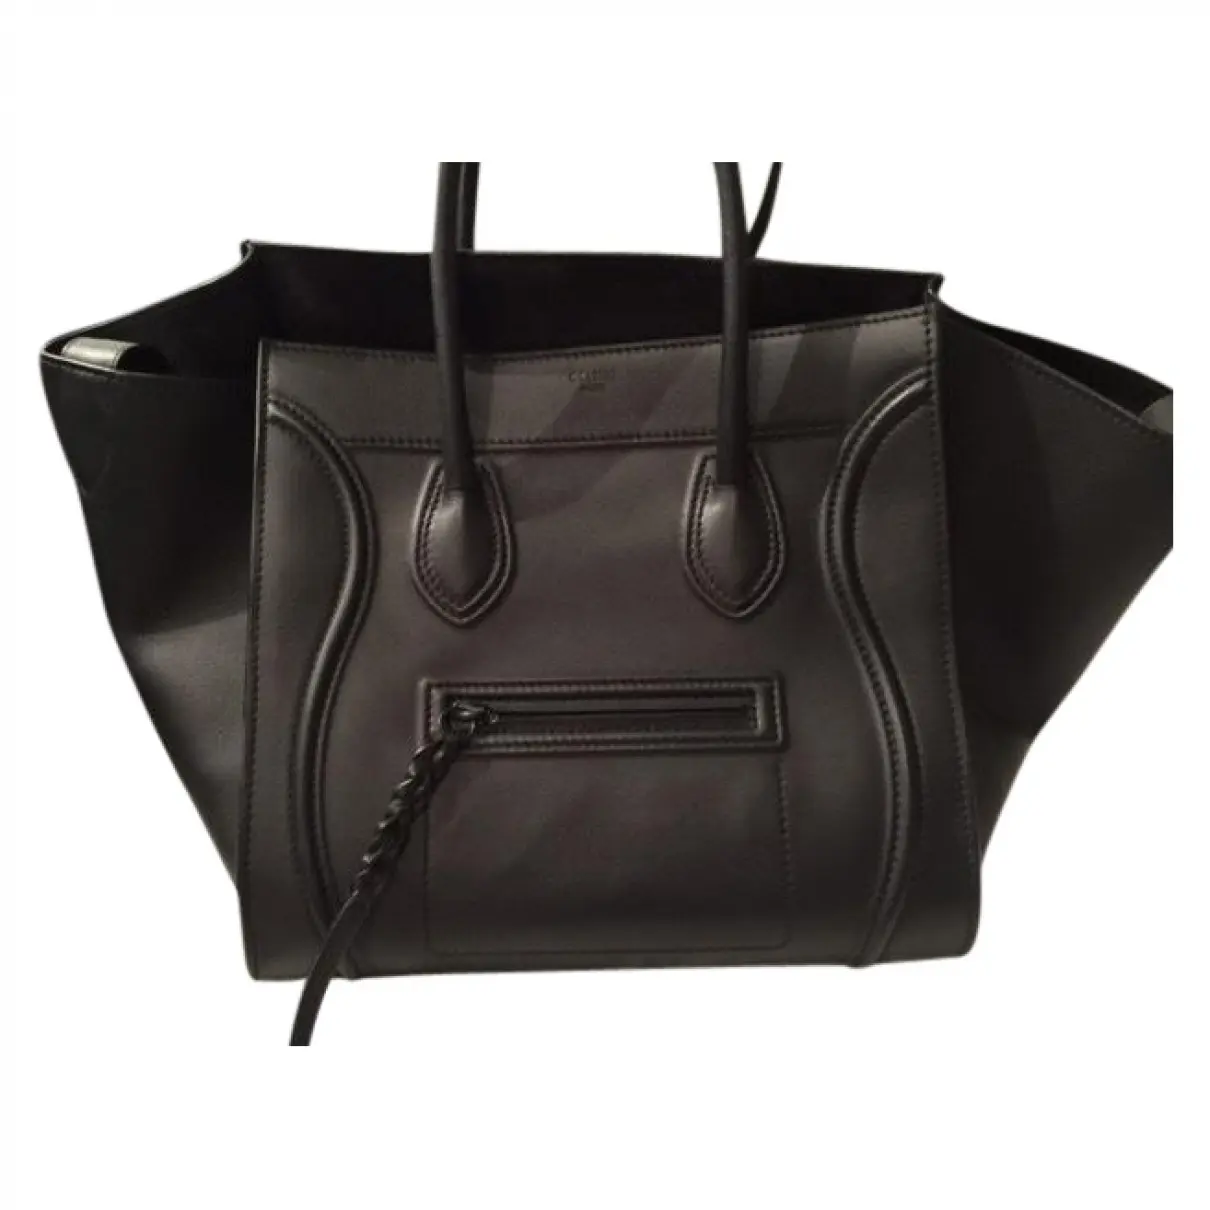 Black Leather Handbag Luggage Phantom Celine